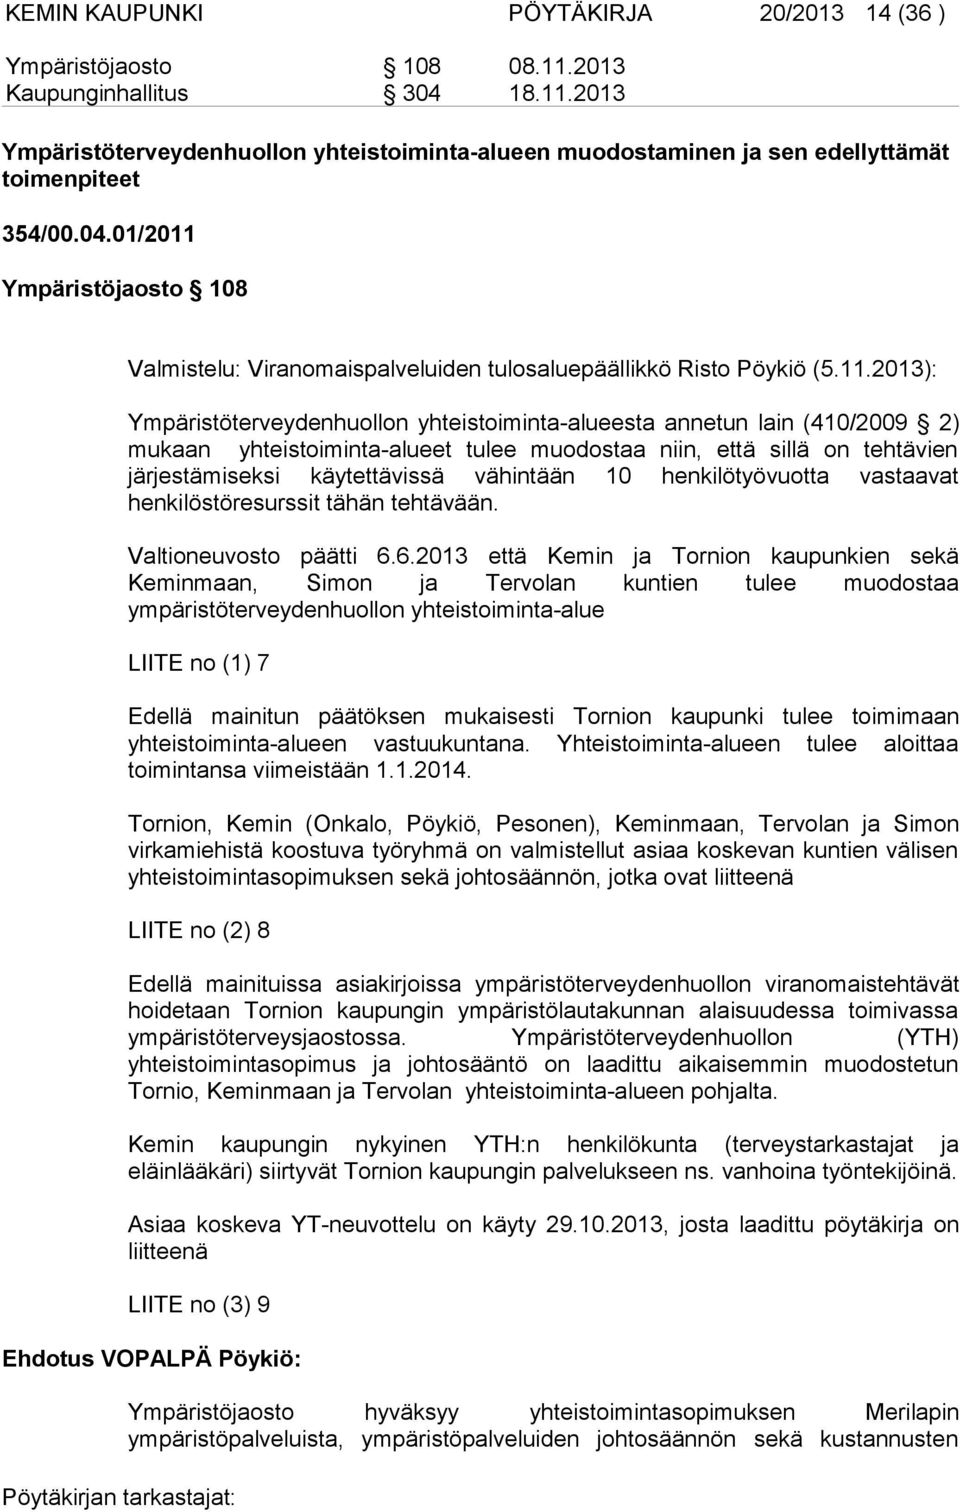 Ympäristöjaosto 108 Valmistelu: Viranomaispalveluiden tulosaluepäällikkö Risto Pöykiö (5.11.